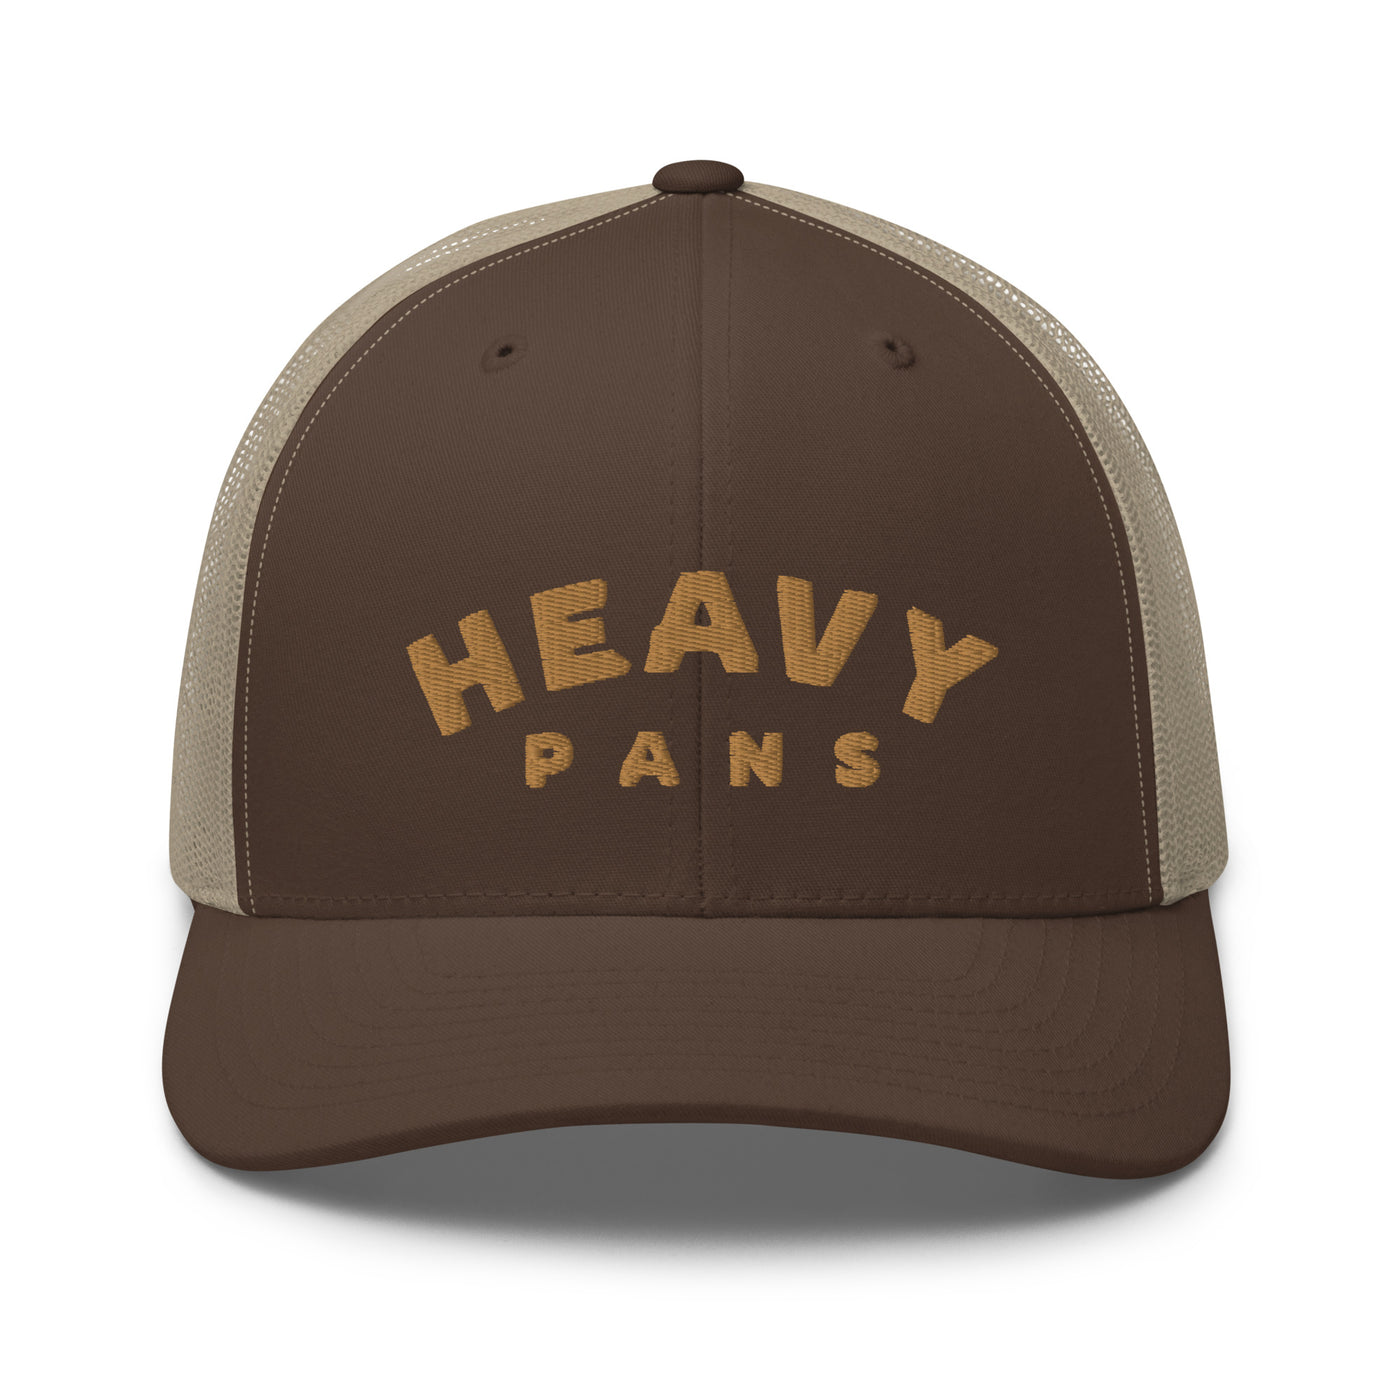 Heavy Pans Trucker Cap